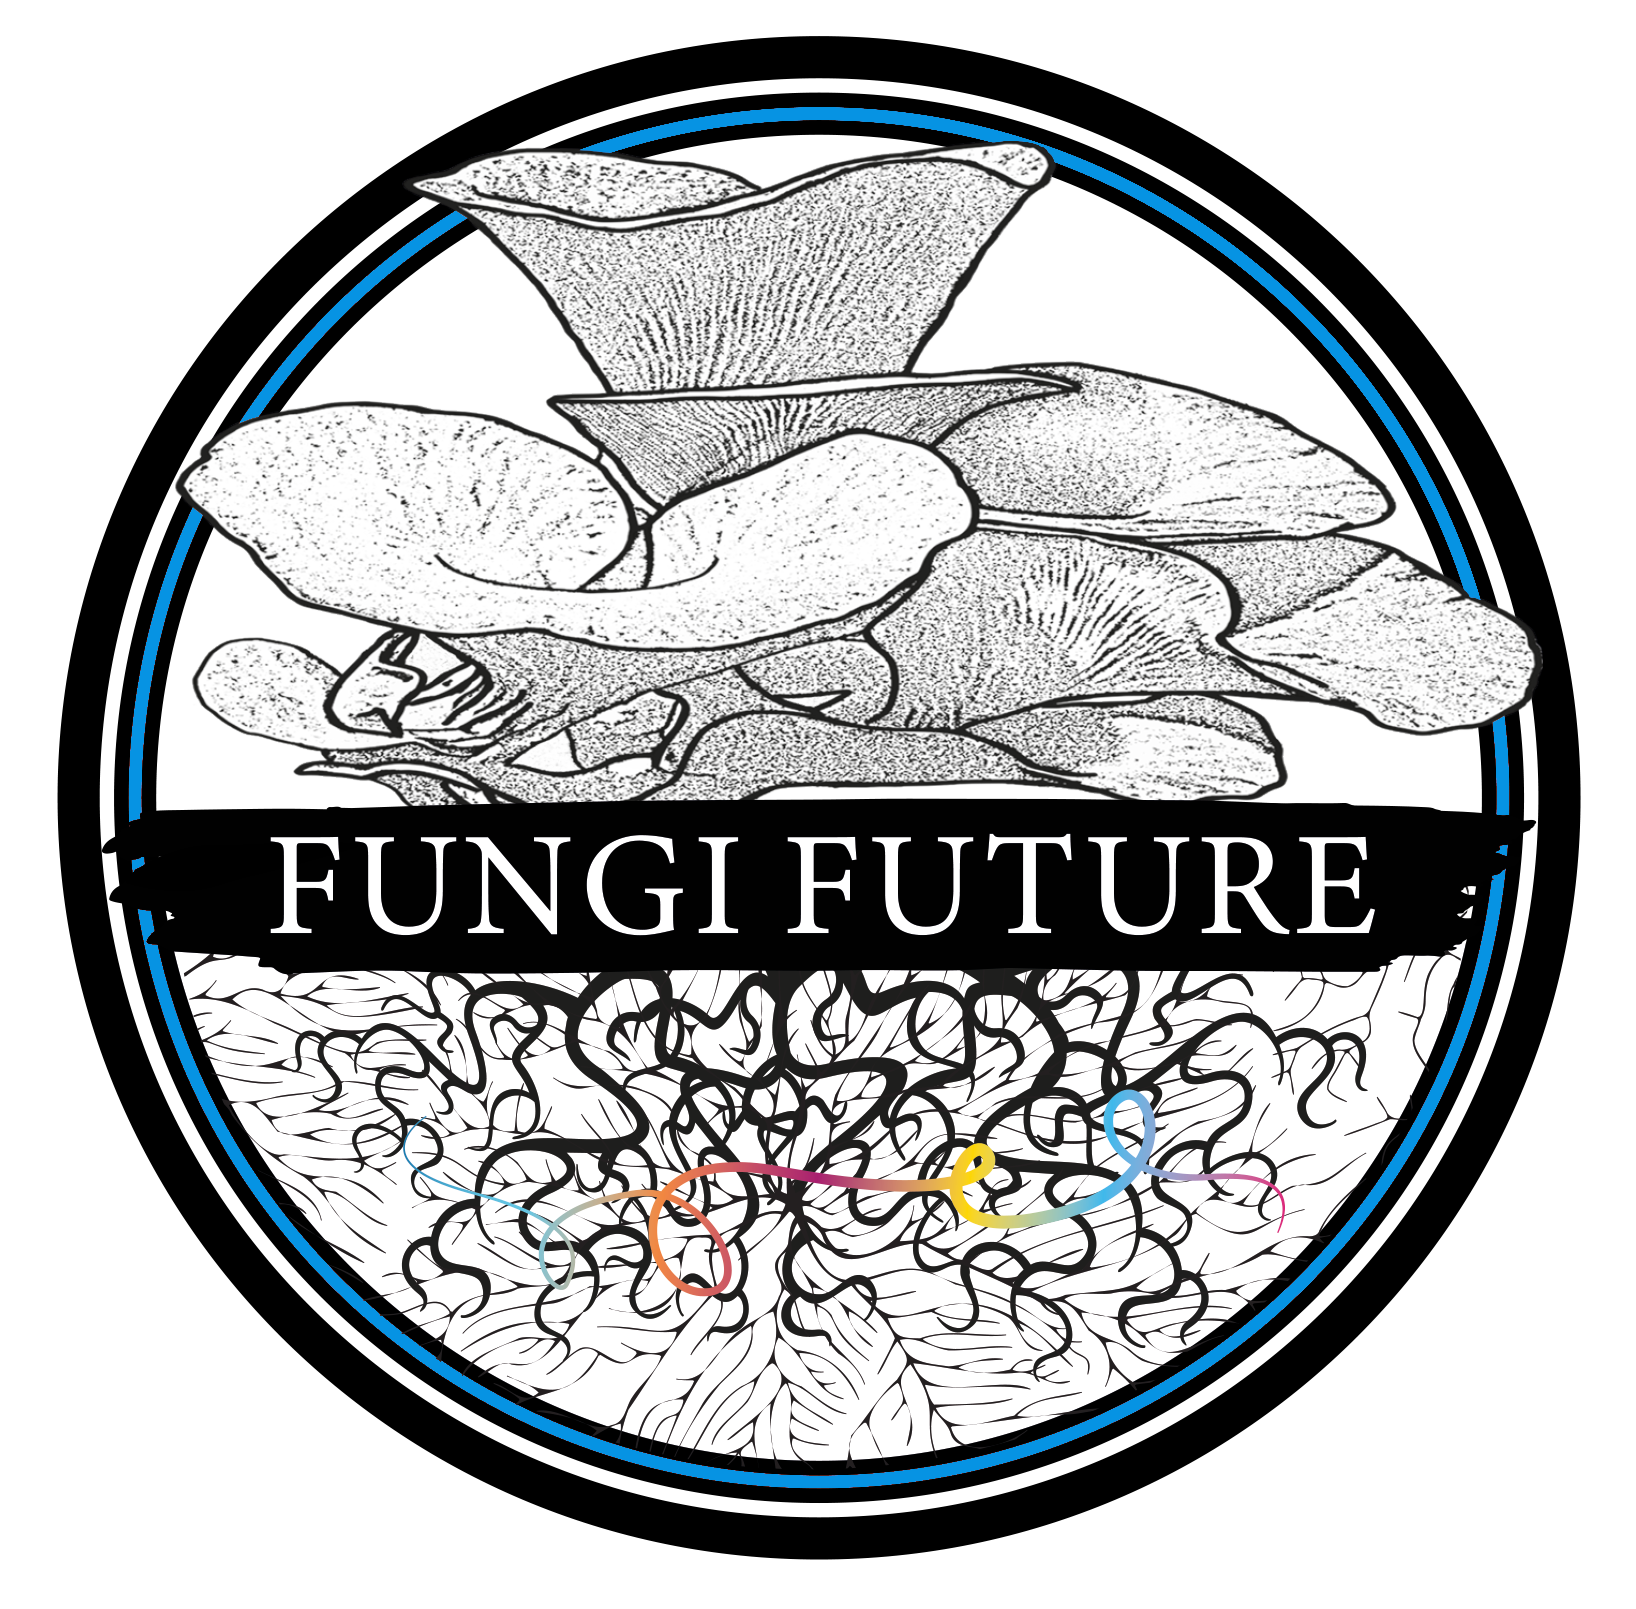 Fungi Future